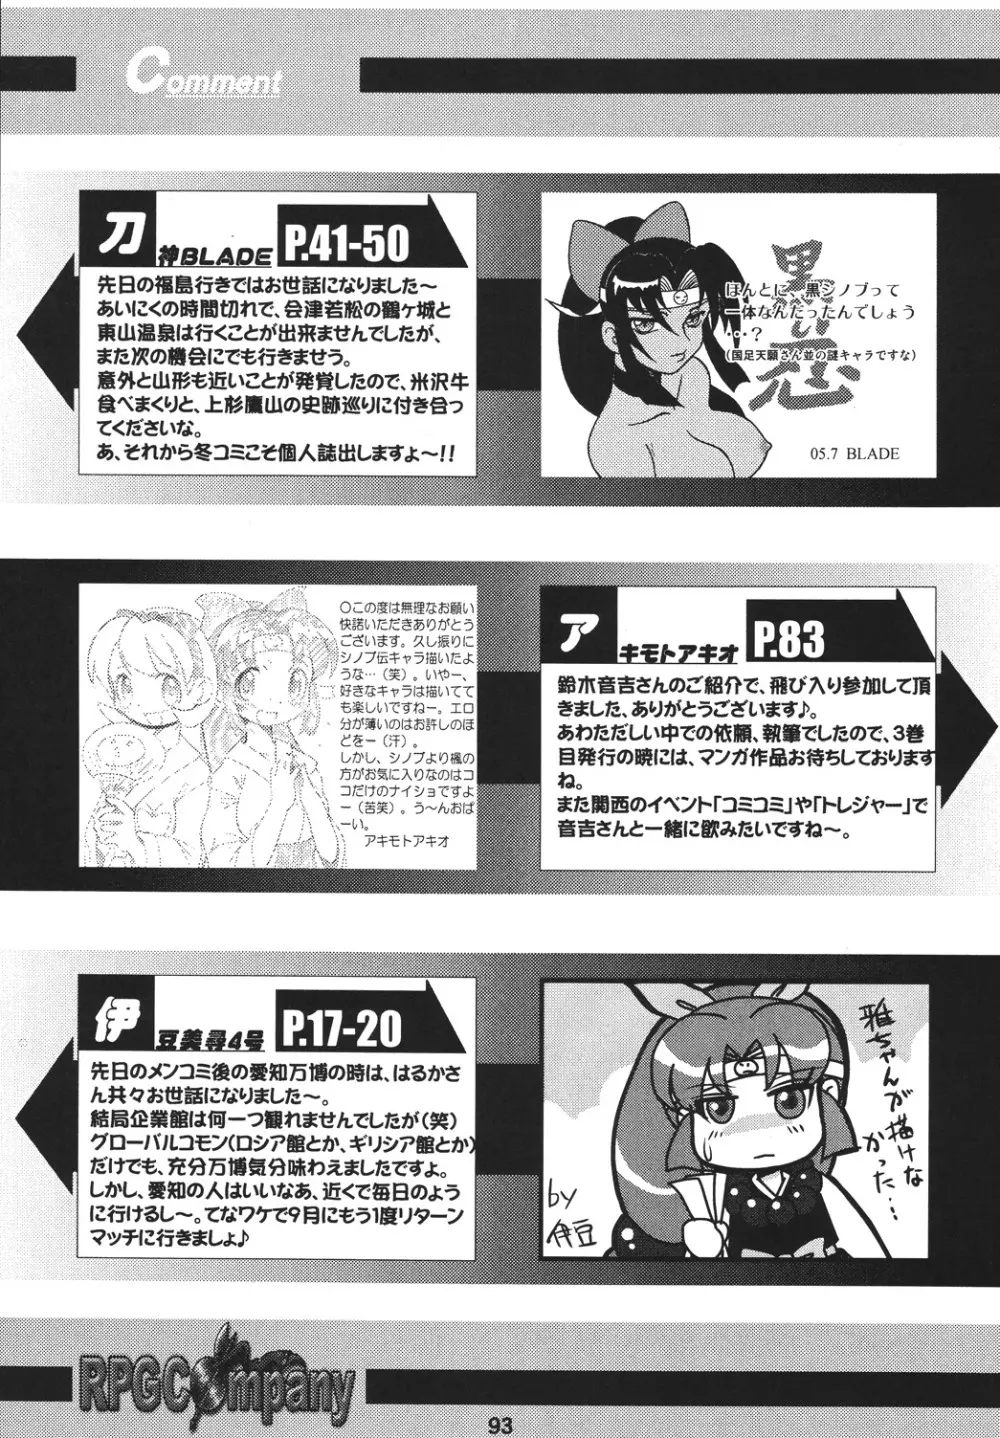 くのいち忍風帳―弐の巻― - page93